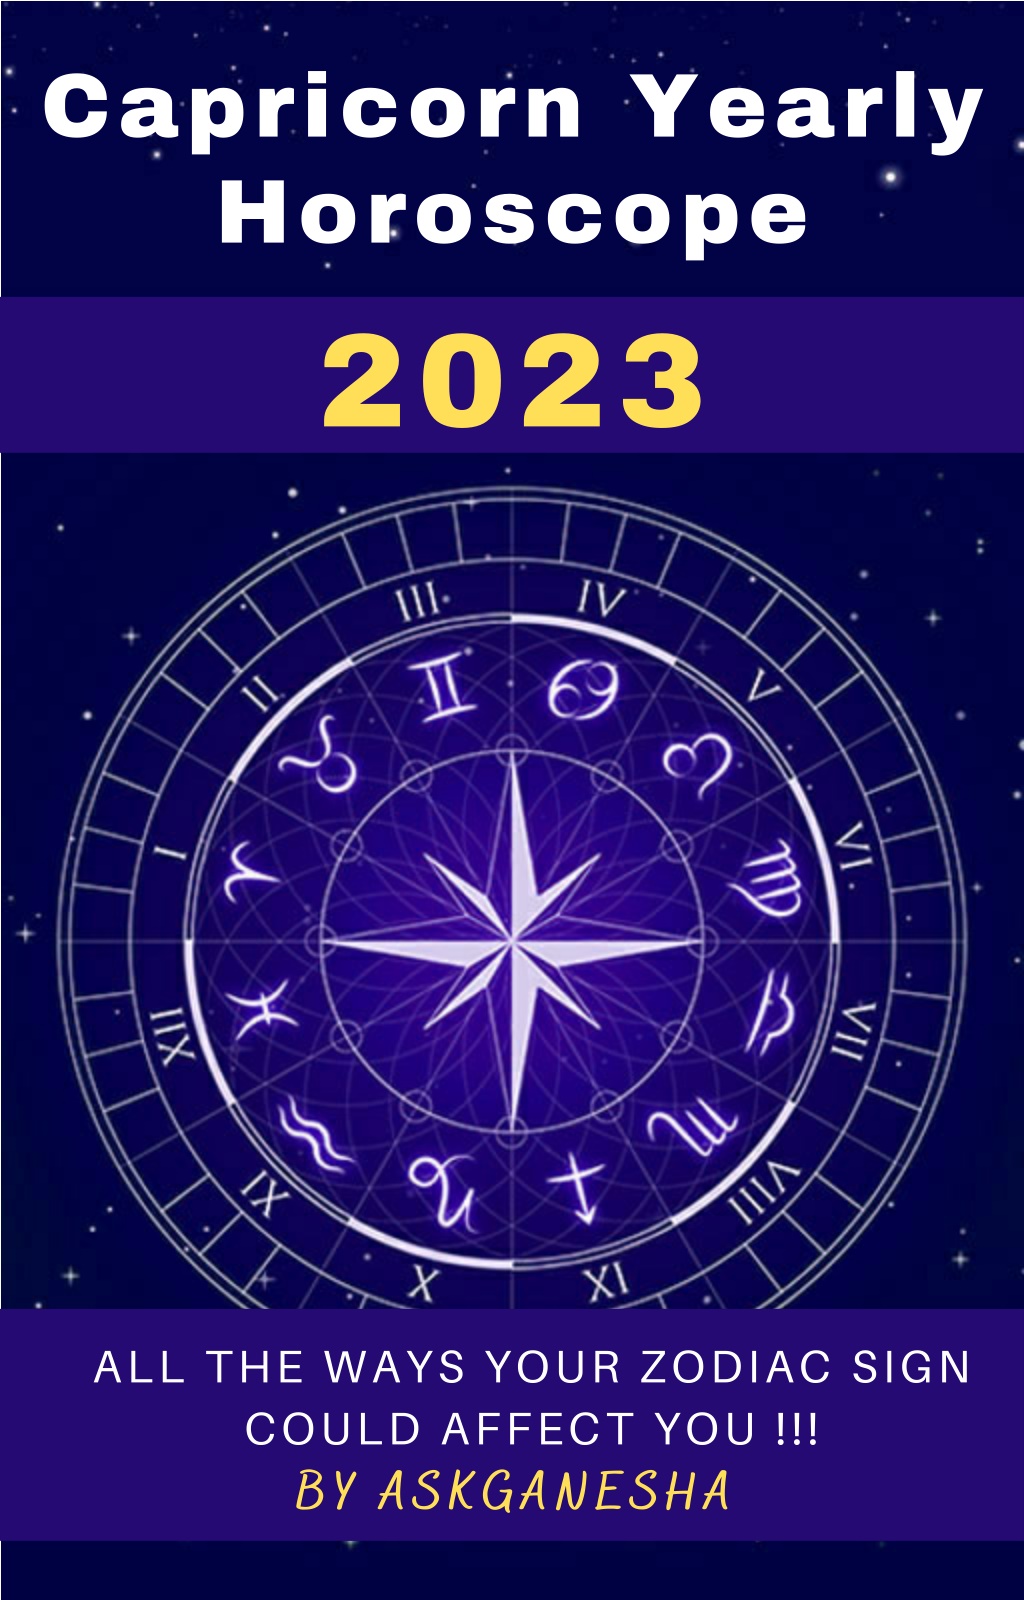 capricorn yearly horoscope 2023 cafe astrology